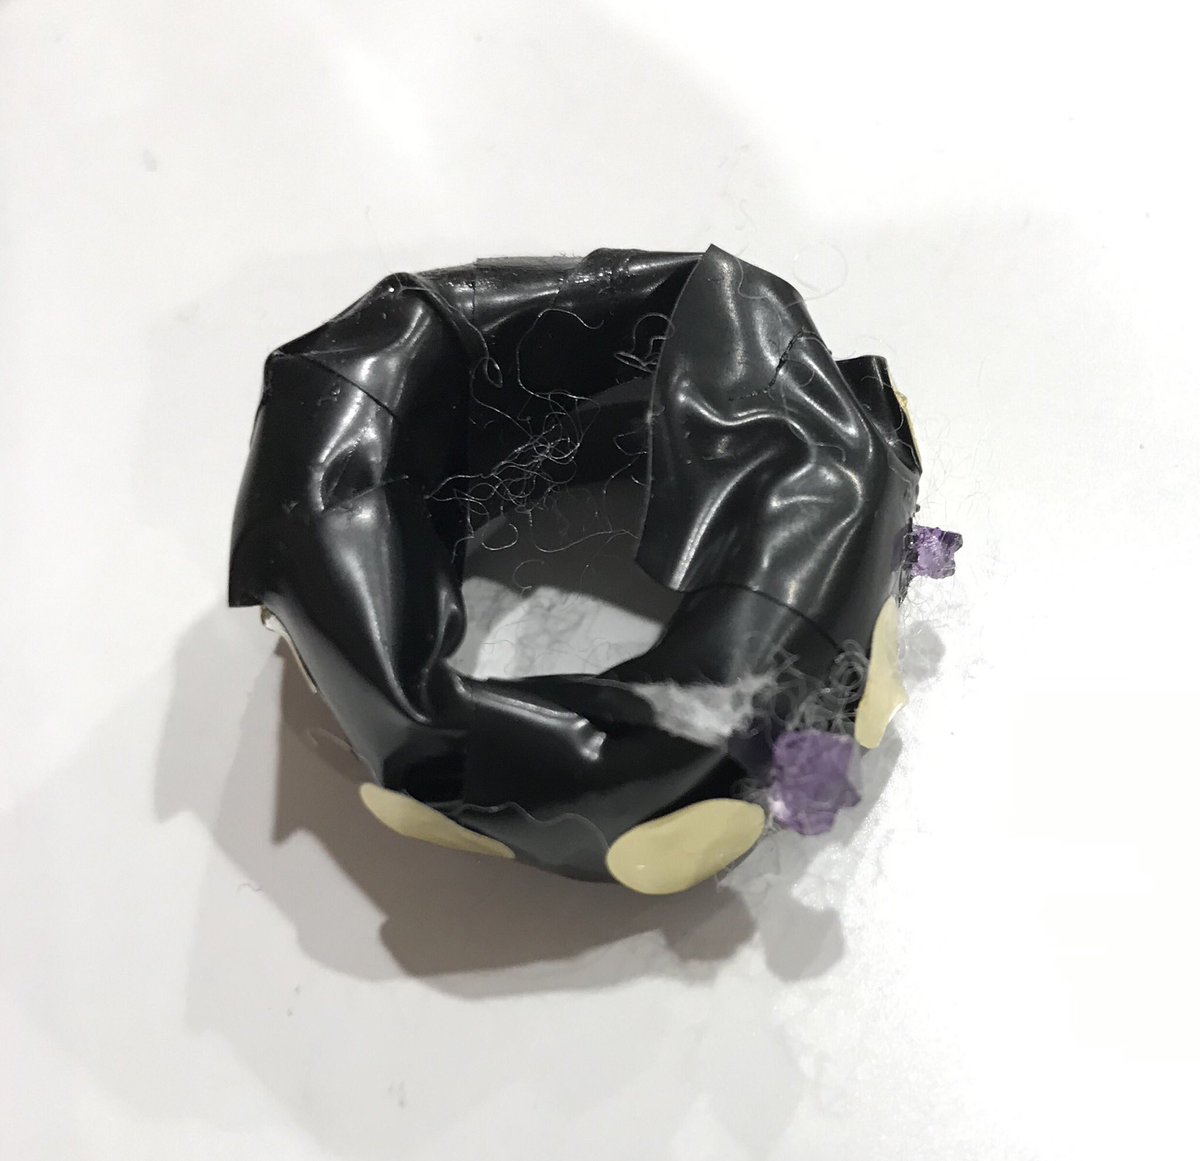 長男からのプレゼント ミョウバンの結晶がくっついているビニールテープ製の指輪 内野こめこ 1月と3月に本出るのイラスト